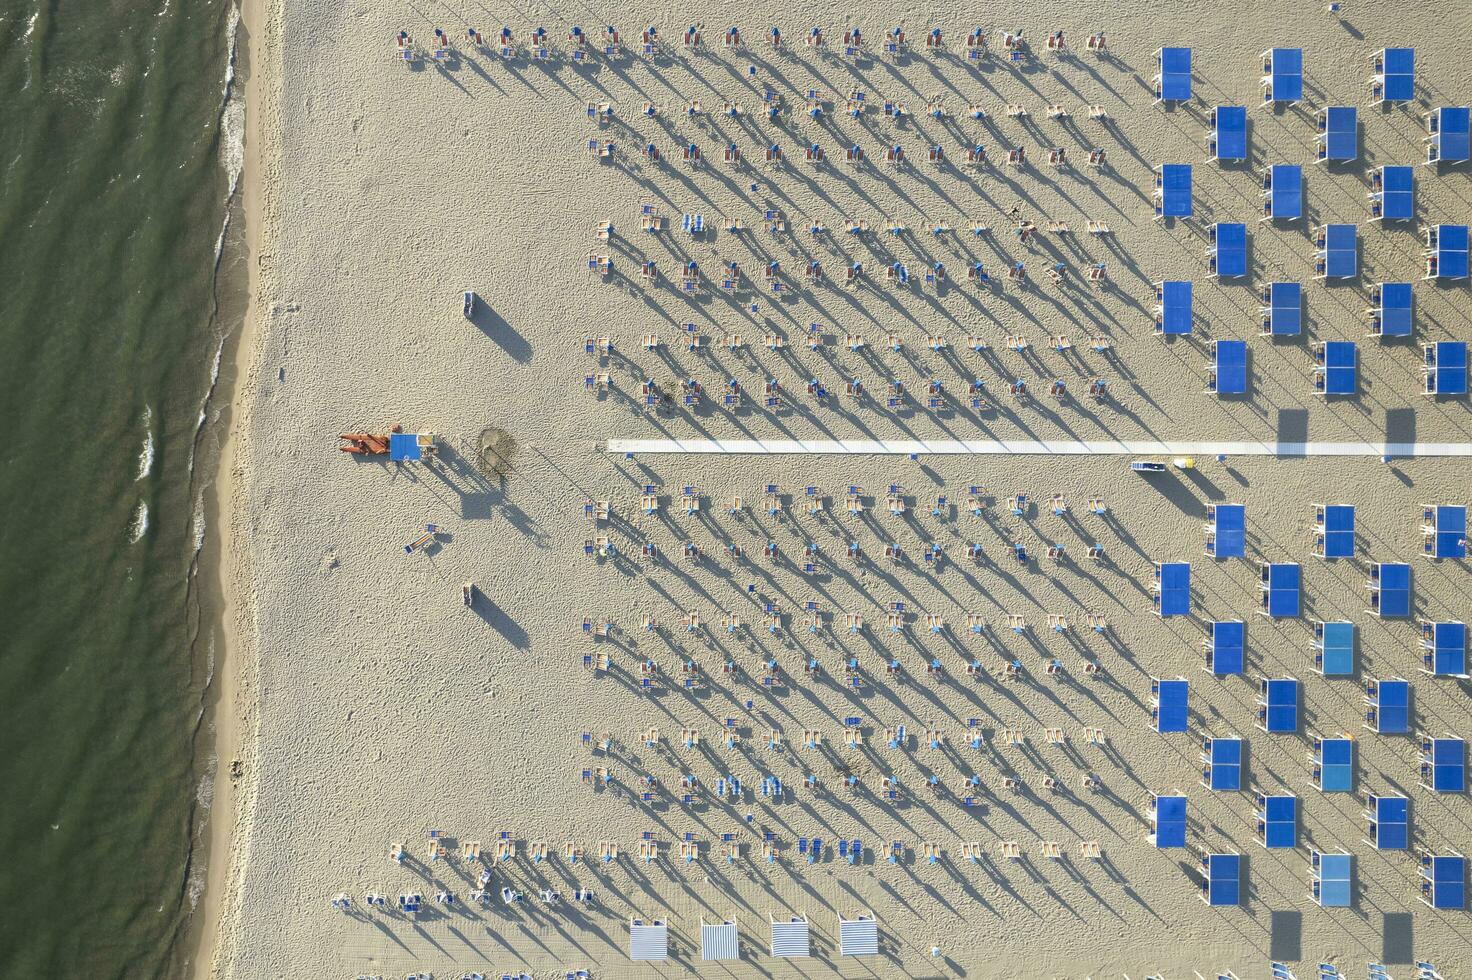 de uitgerust strand van versilia gezien van bovenstaand foto